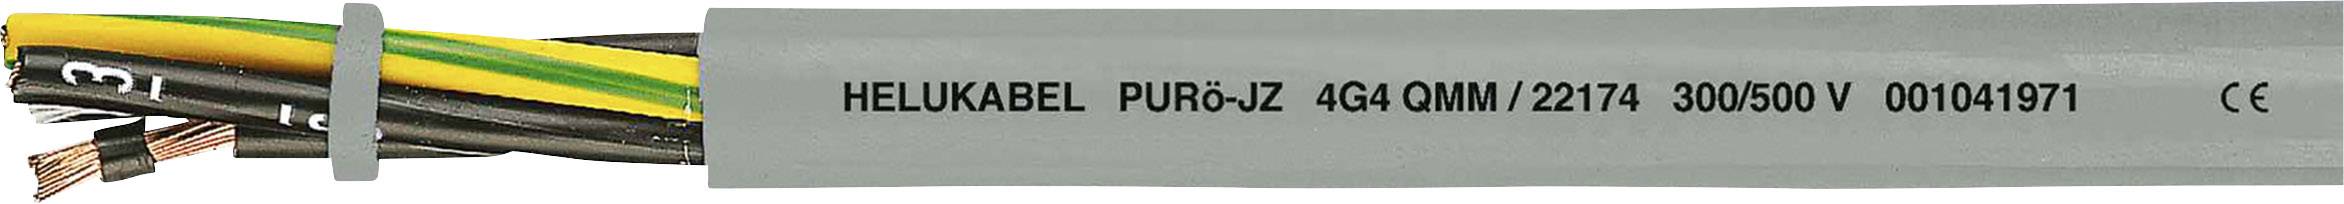 HELUKABEL PURö-JZ Steuerleitung 4 G 0.75 mm² Grau 22118-500 500 m